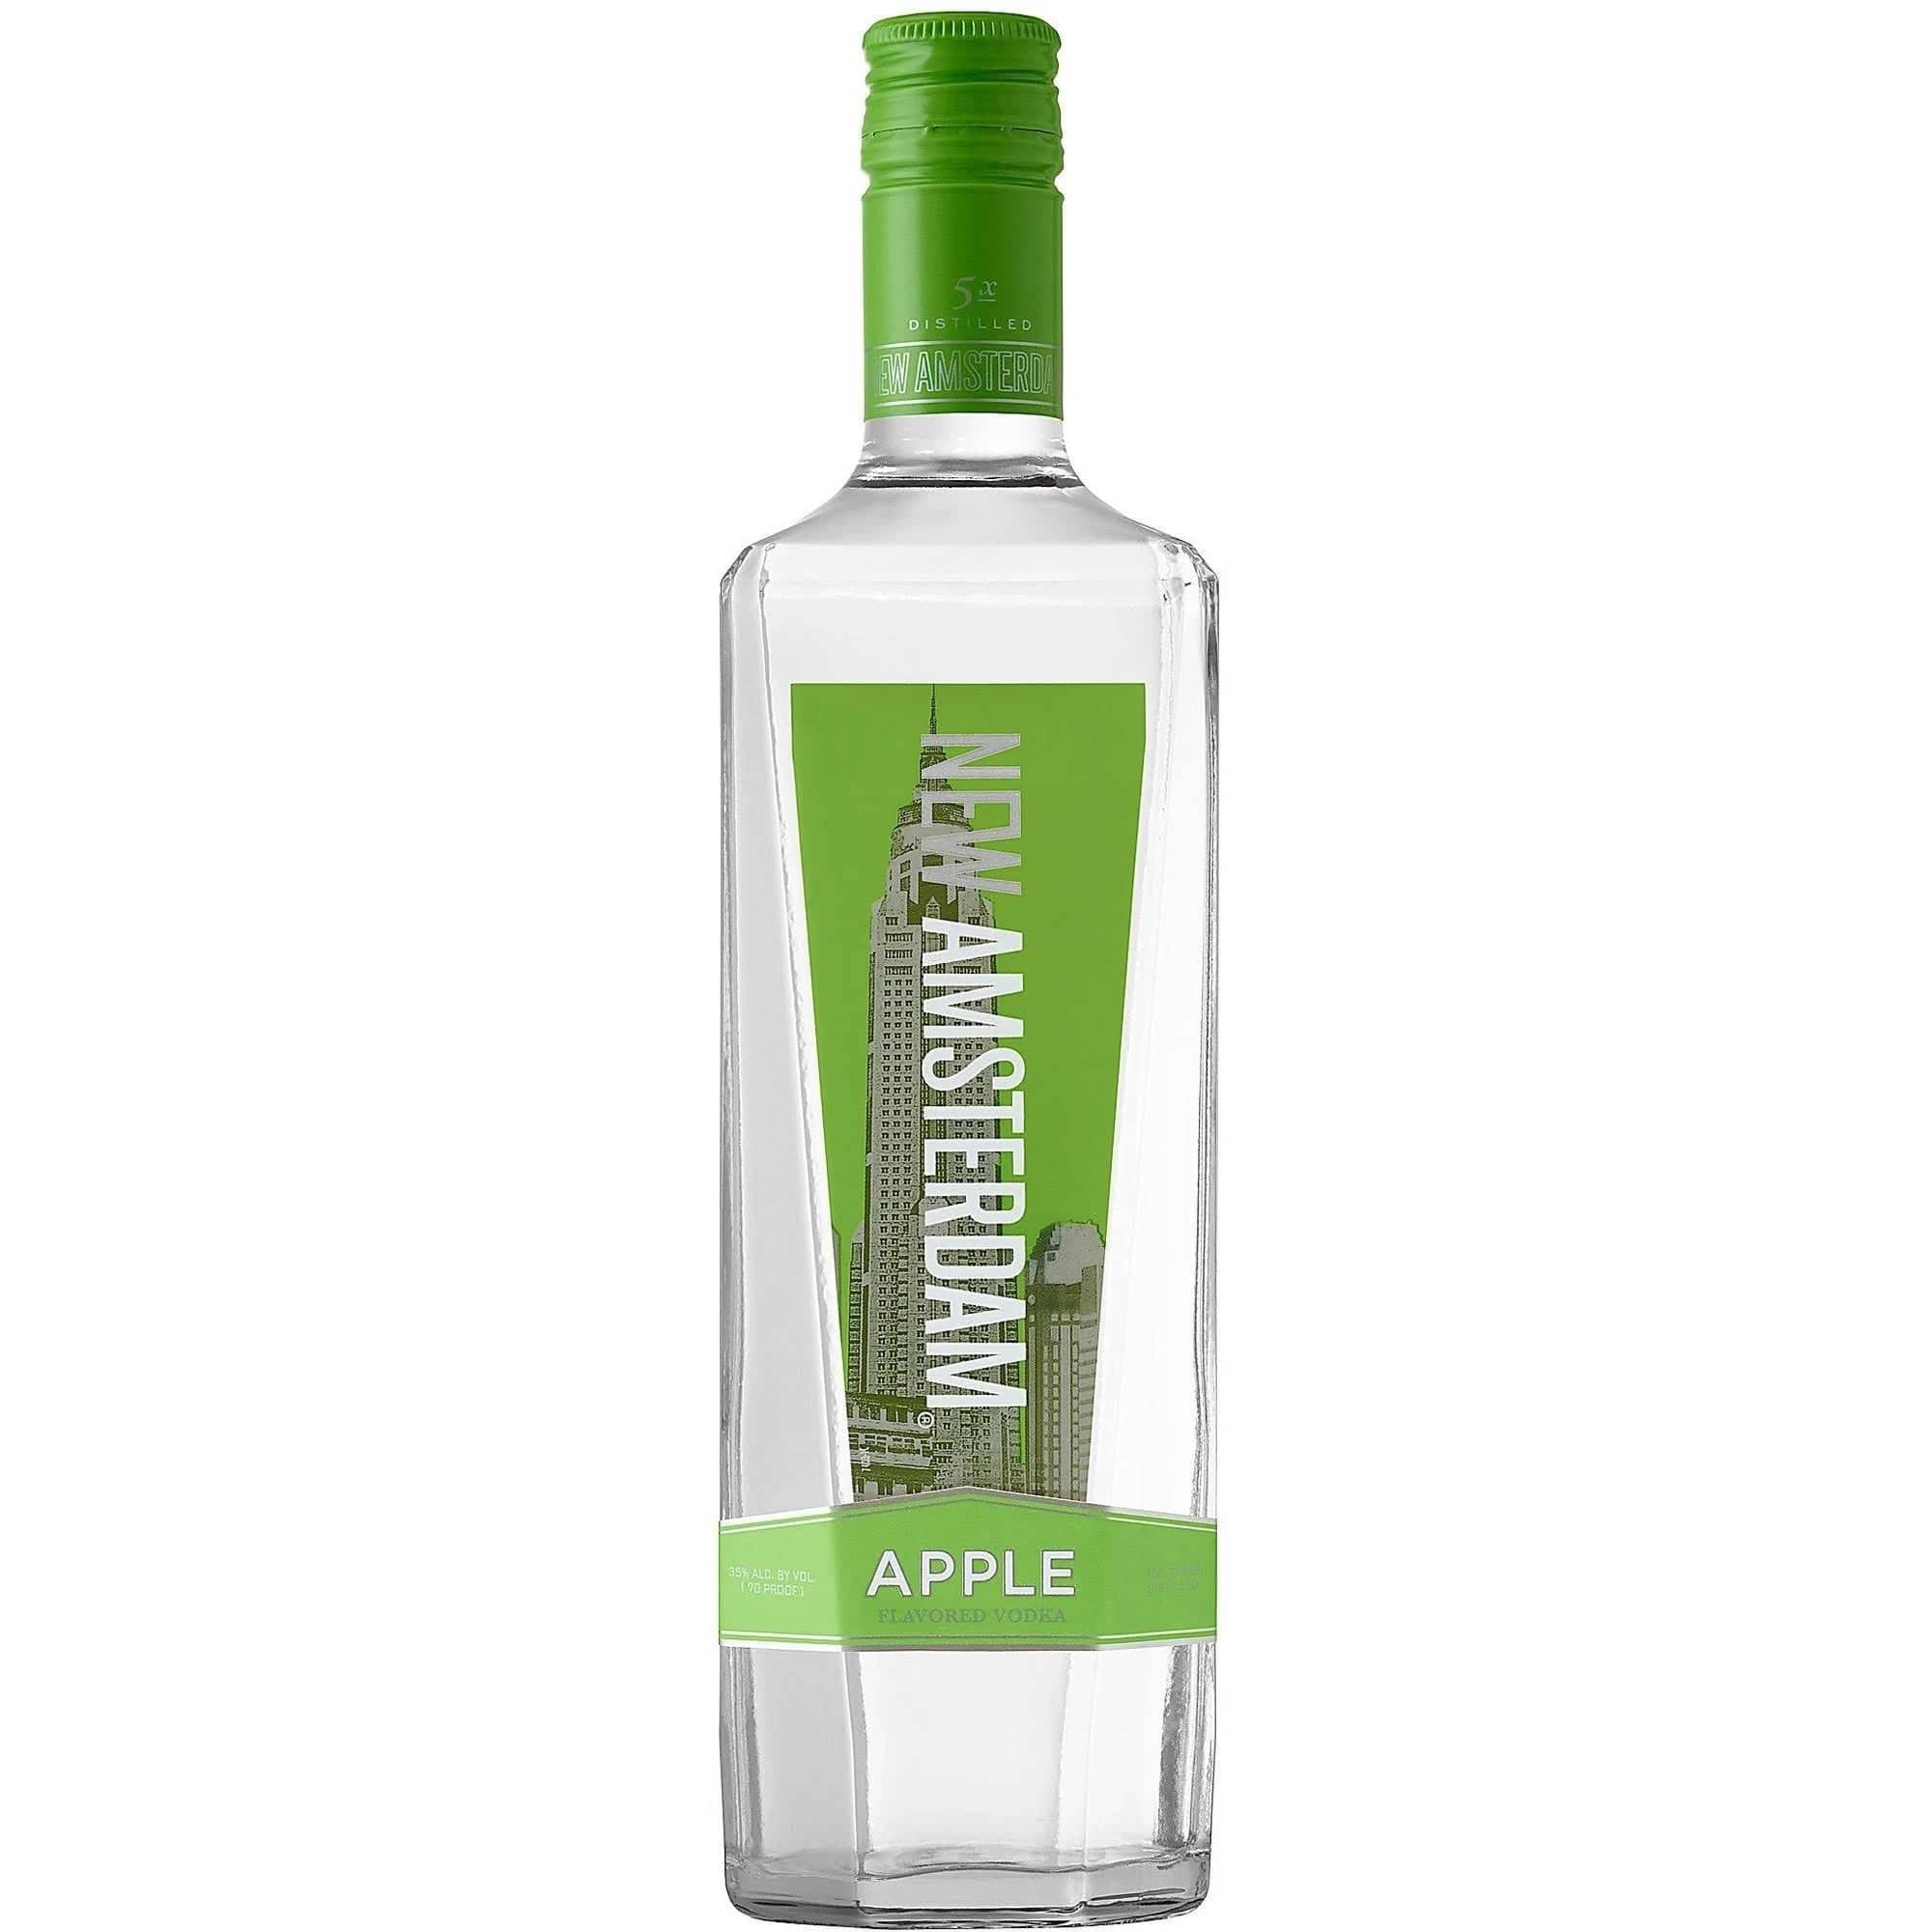 New Amsterdam Apple Vodka - 750 ml bottle